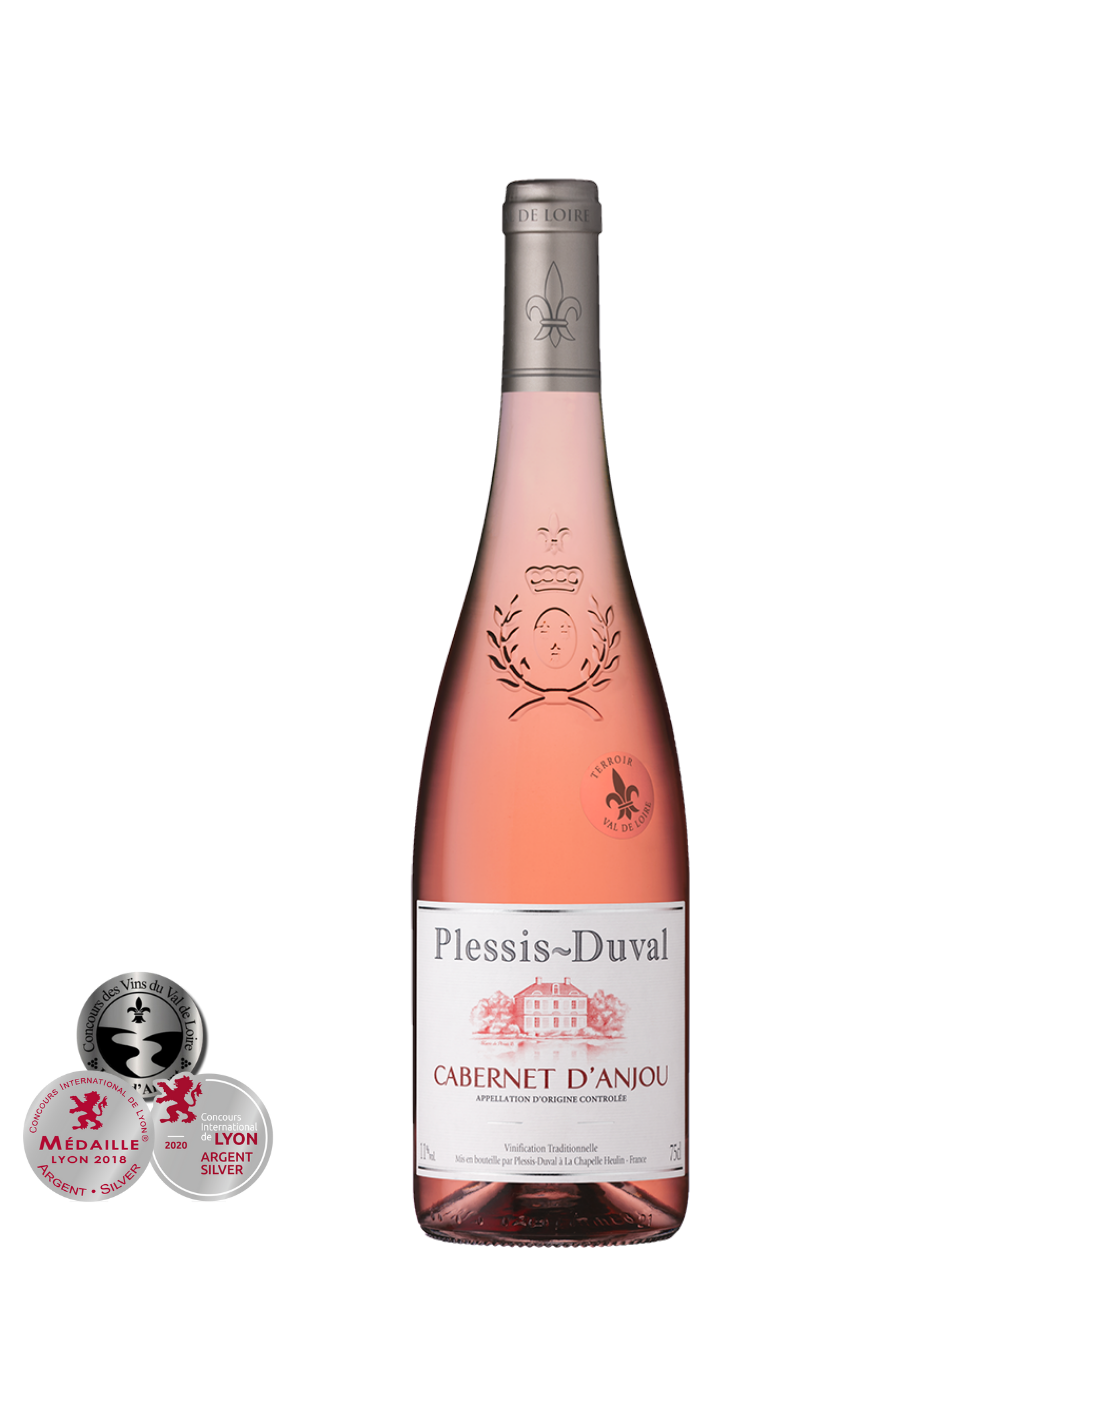 Vin roze sec Cabernet D’Anjou, Plessis Duval, 0.75L, 11% alc., Franta alcooldiscount.ro